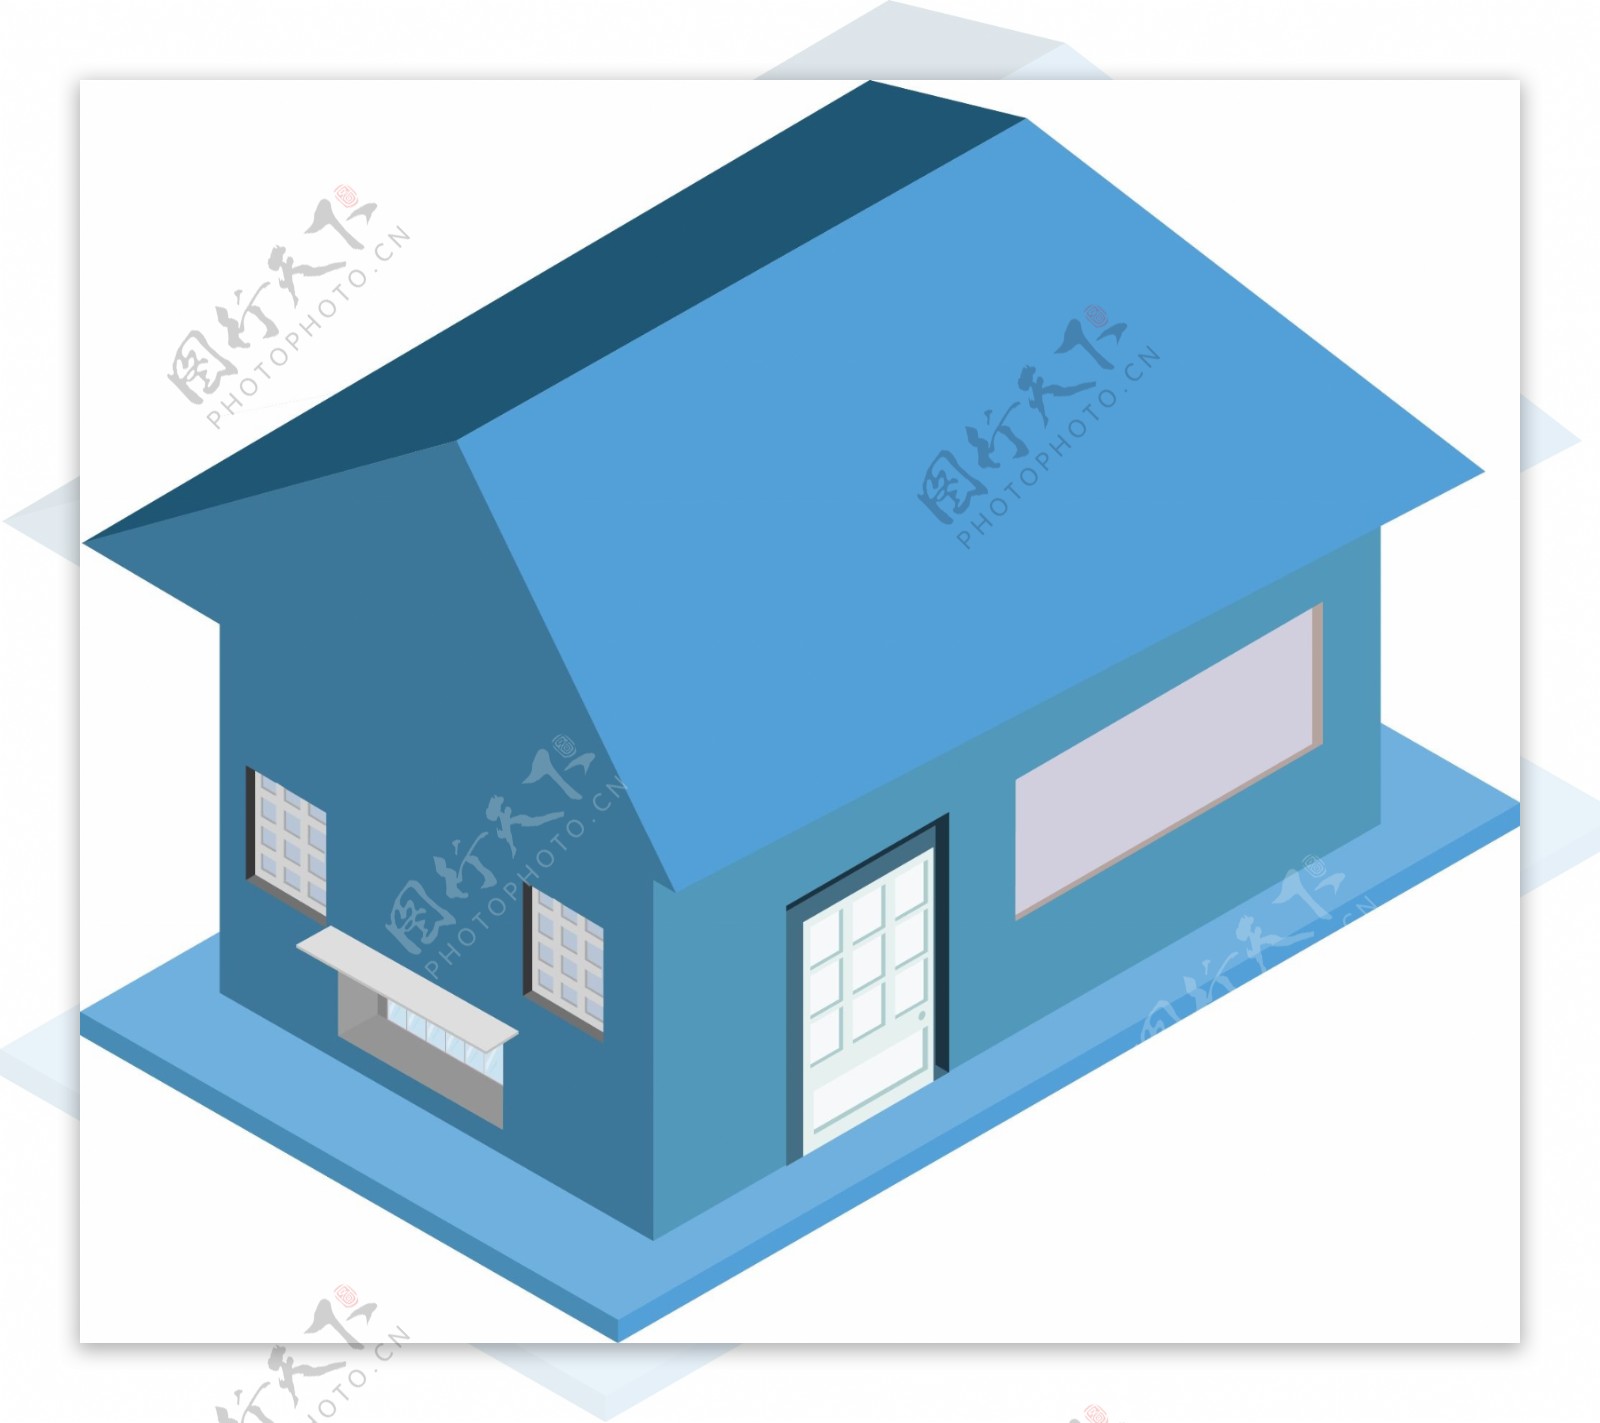 2.5D房屋建筑简单设计AI素材